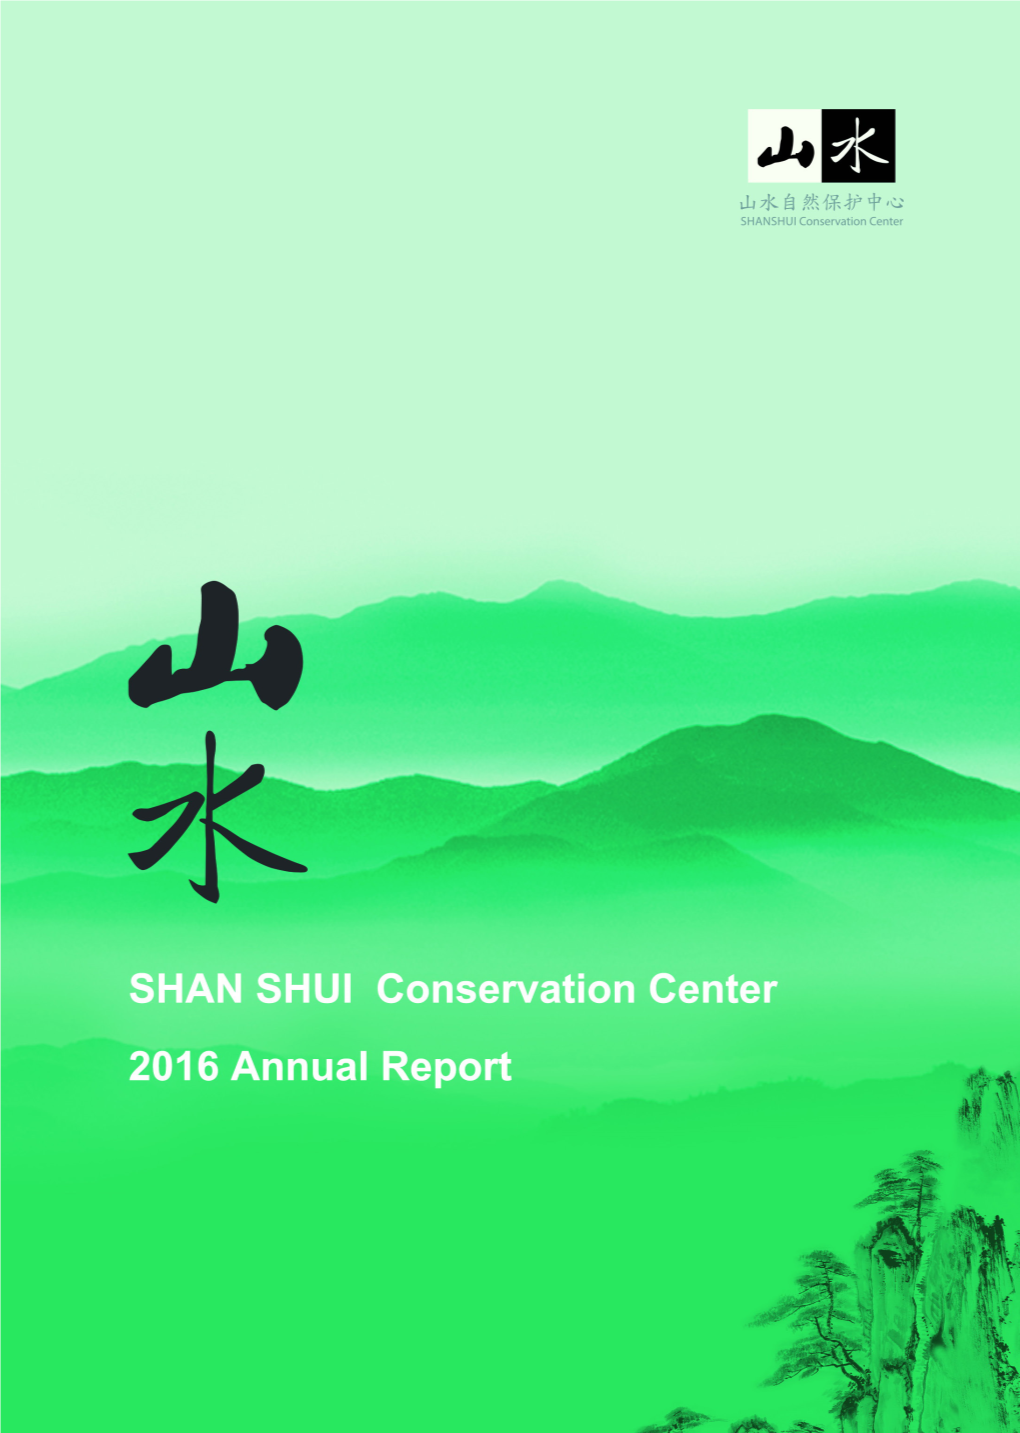 02 山水自然保护中心 2016 年报 Publisher | Shan Shui Conservation Center